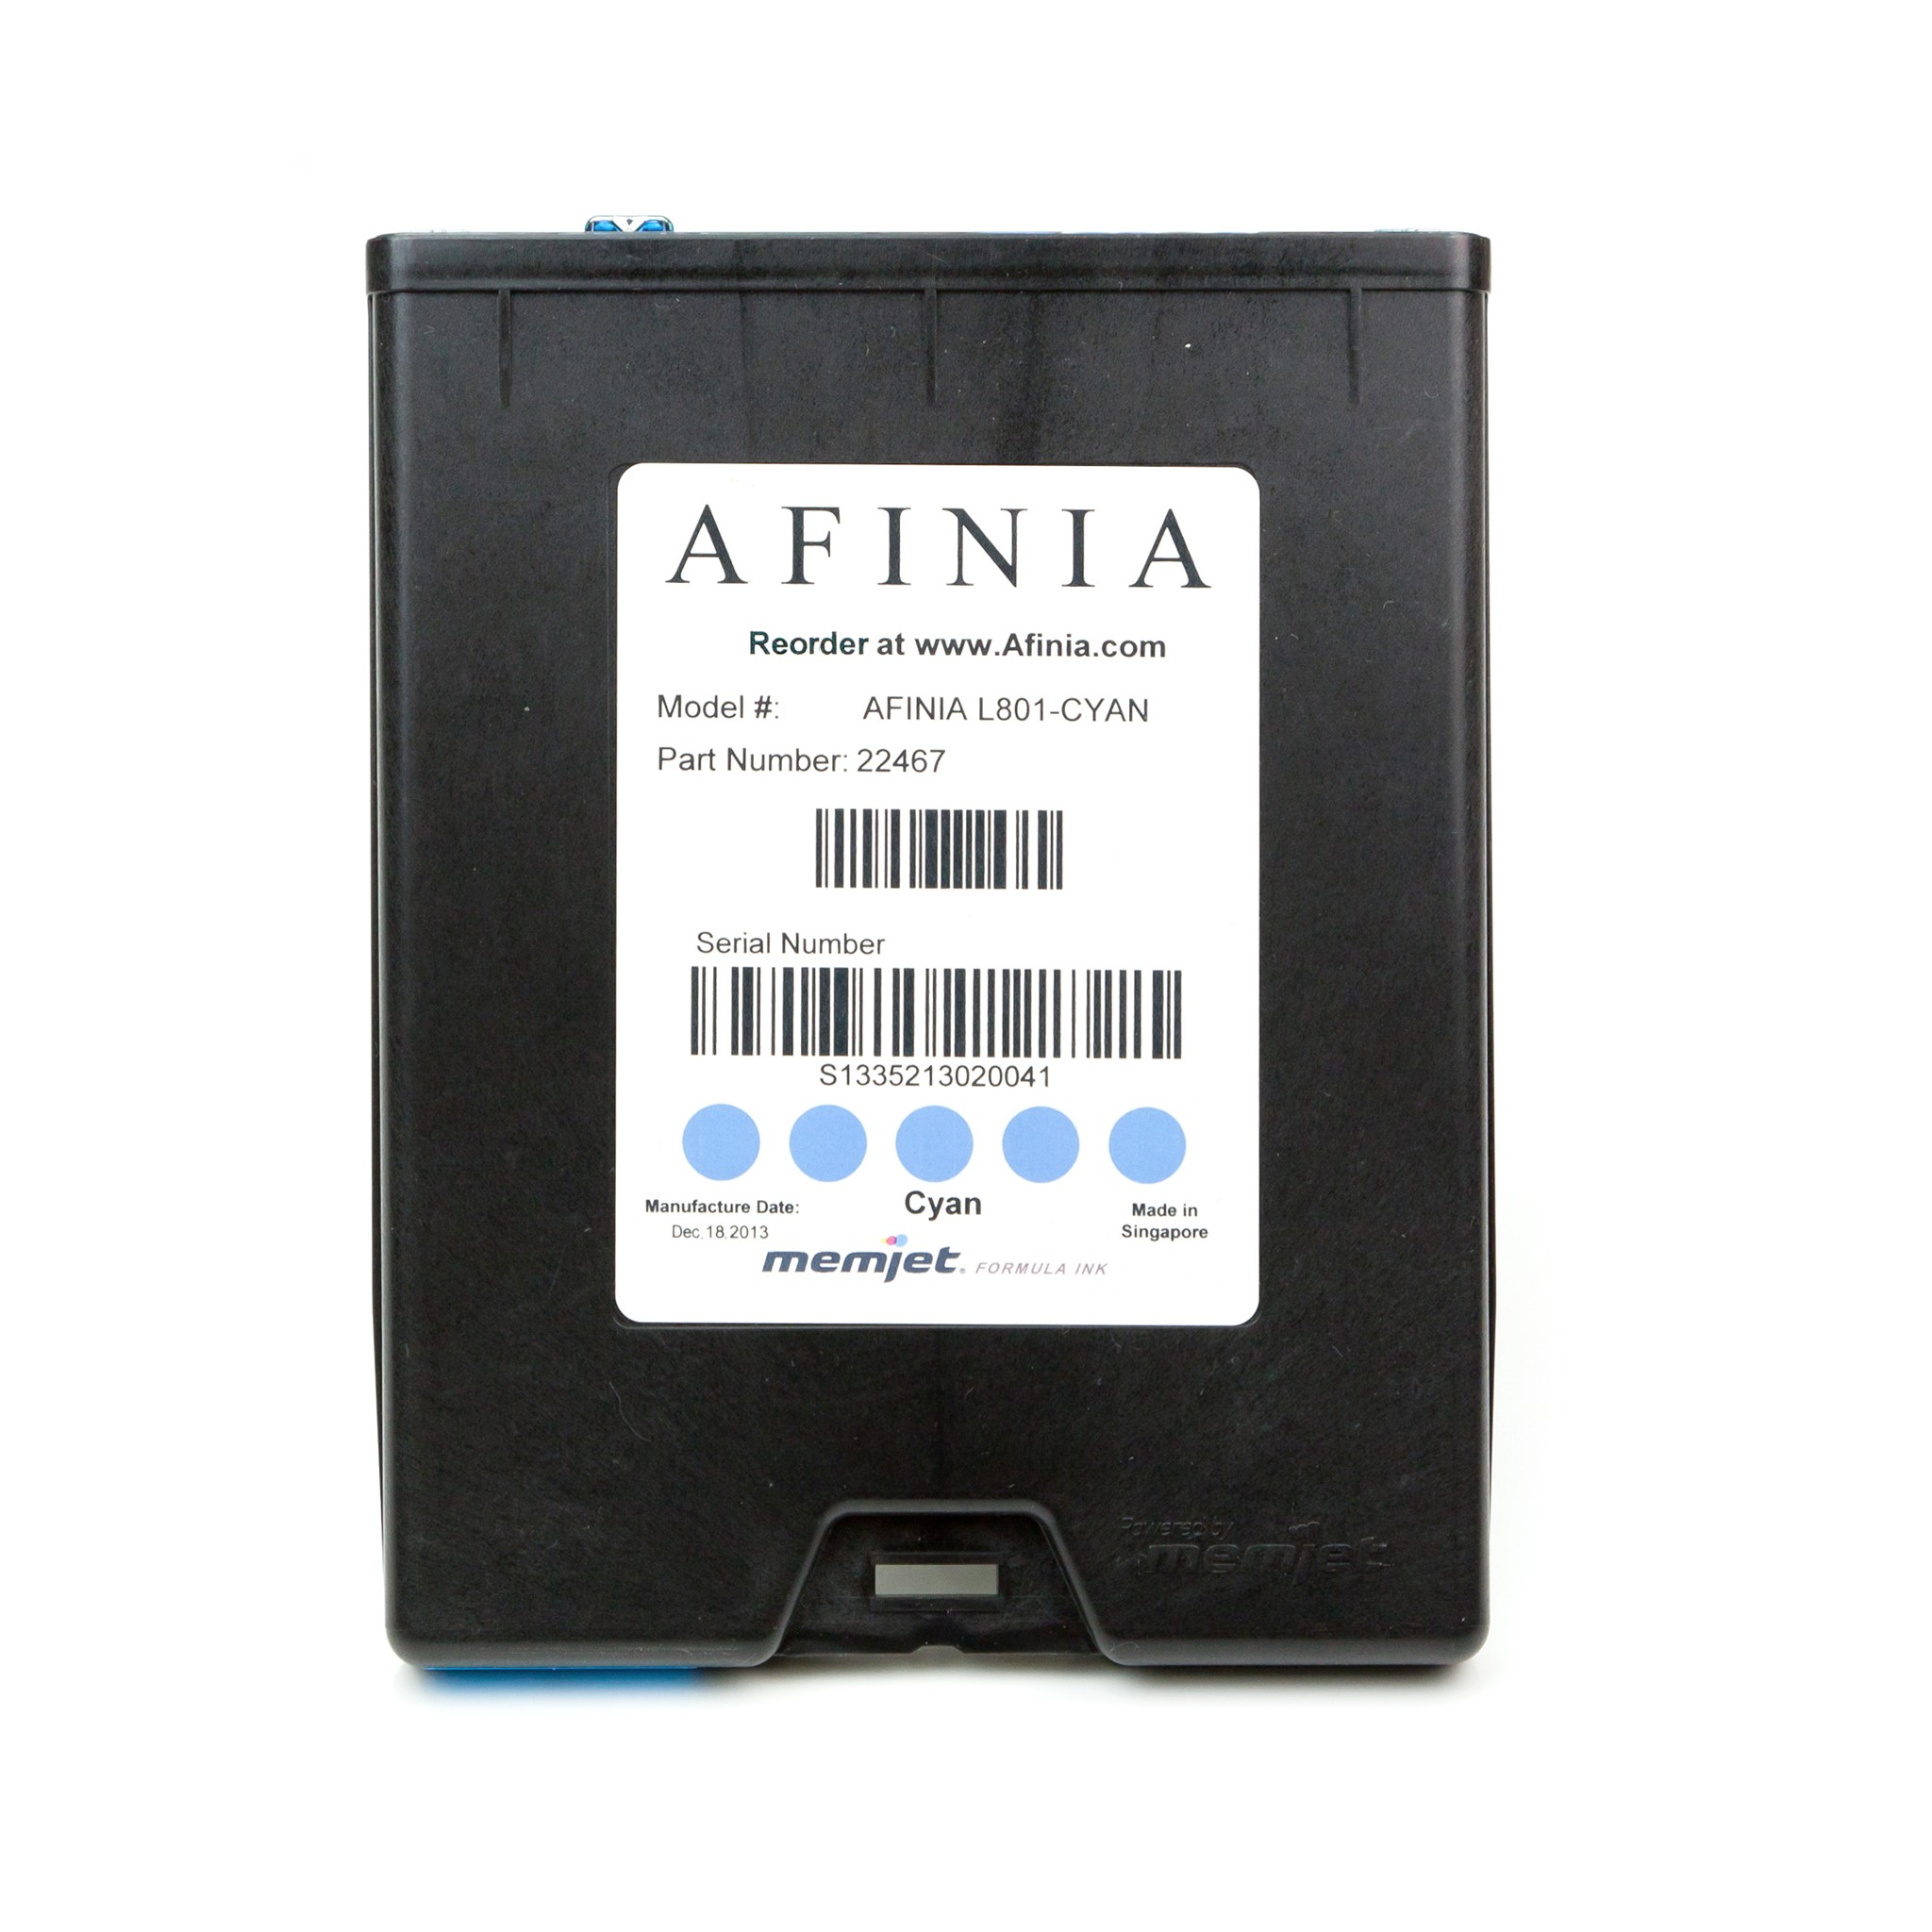 εικόνα του Afinia L801 κυανή κασέτα μελανιού